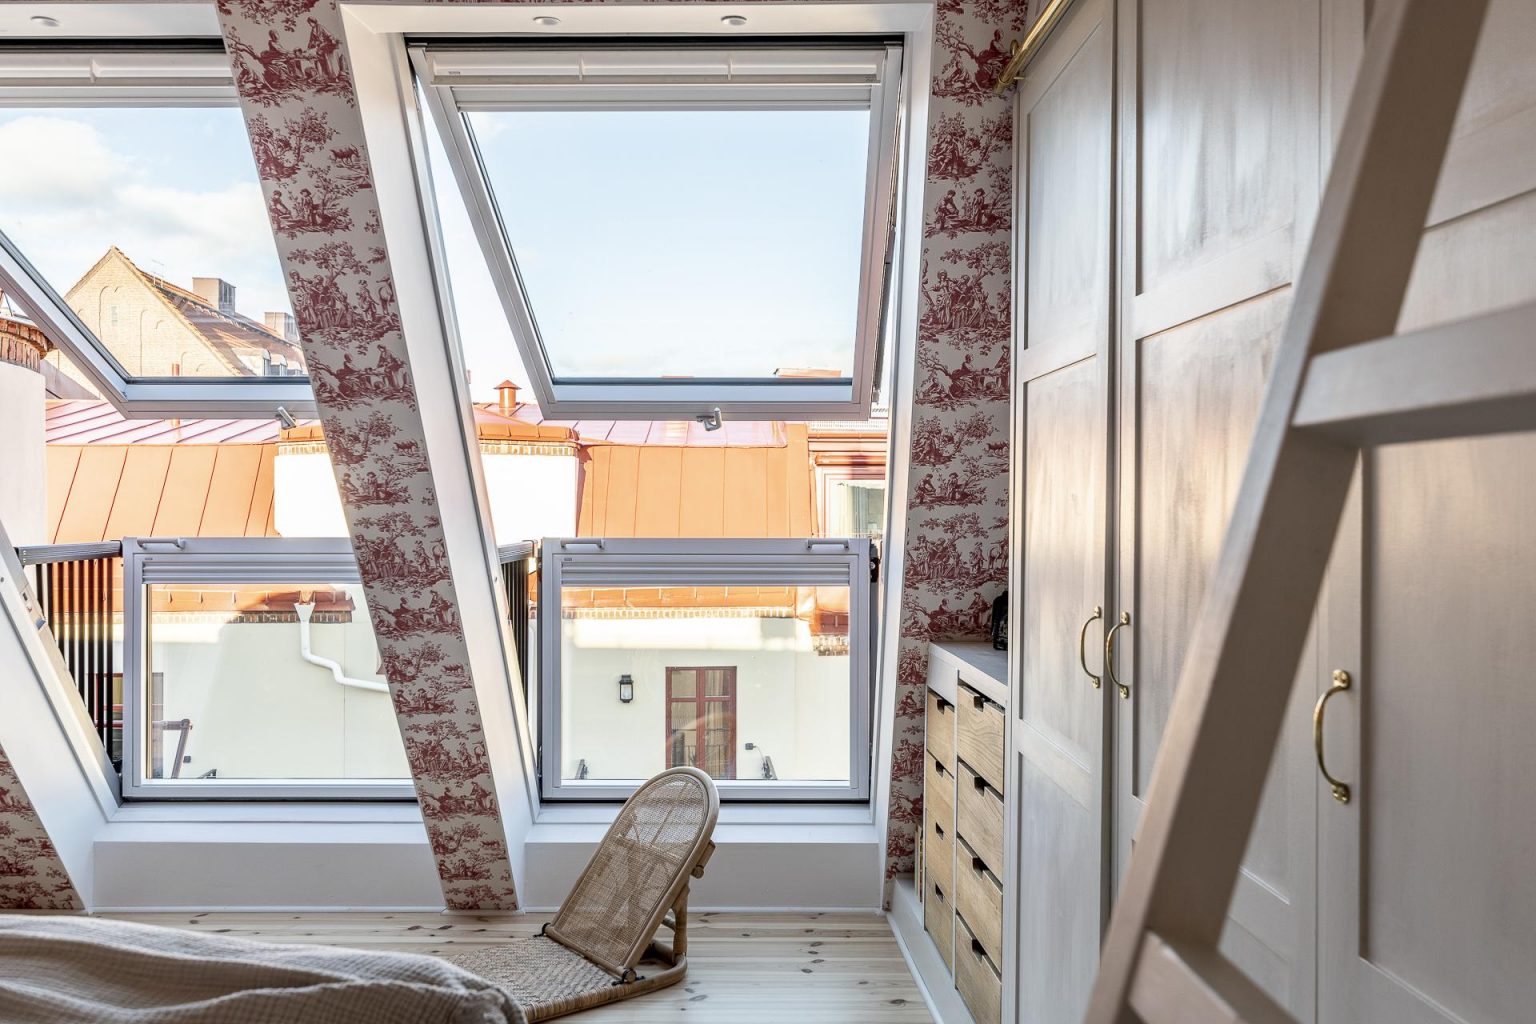 chambre papier-peint toile de Jouy rose fenêtre de toit balcon